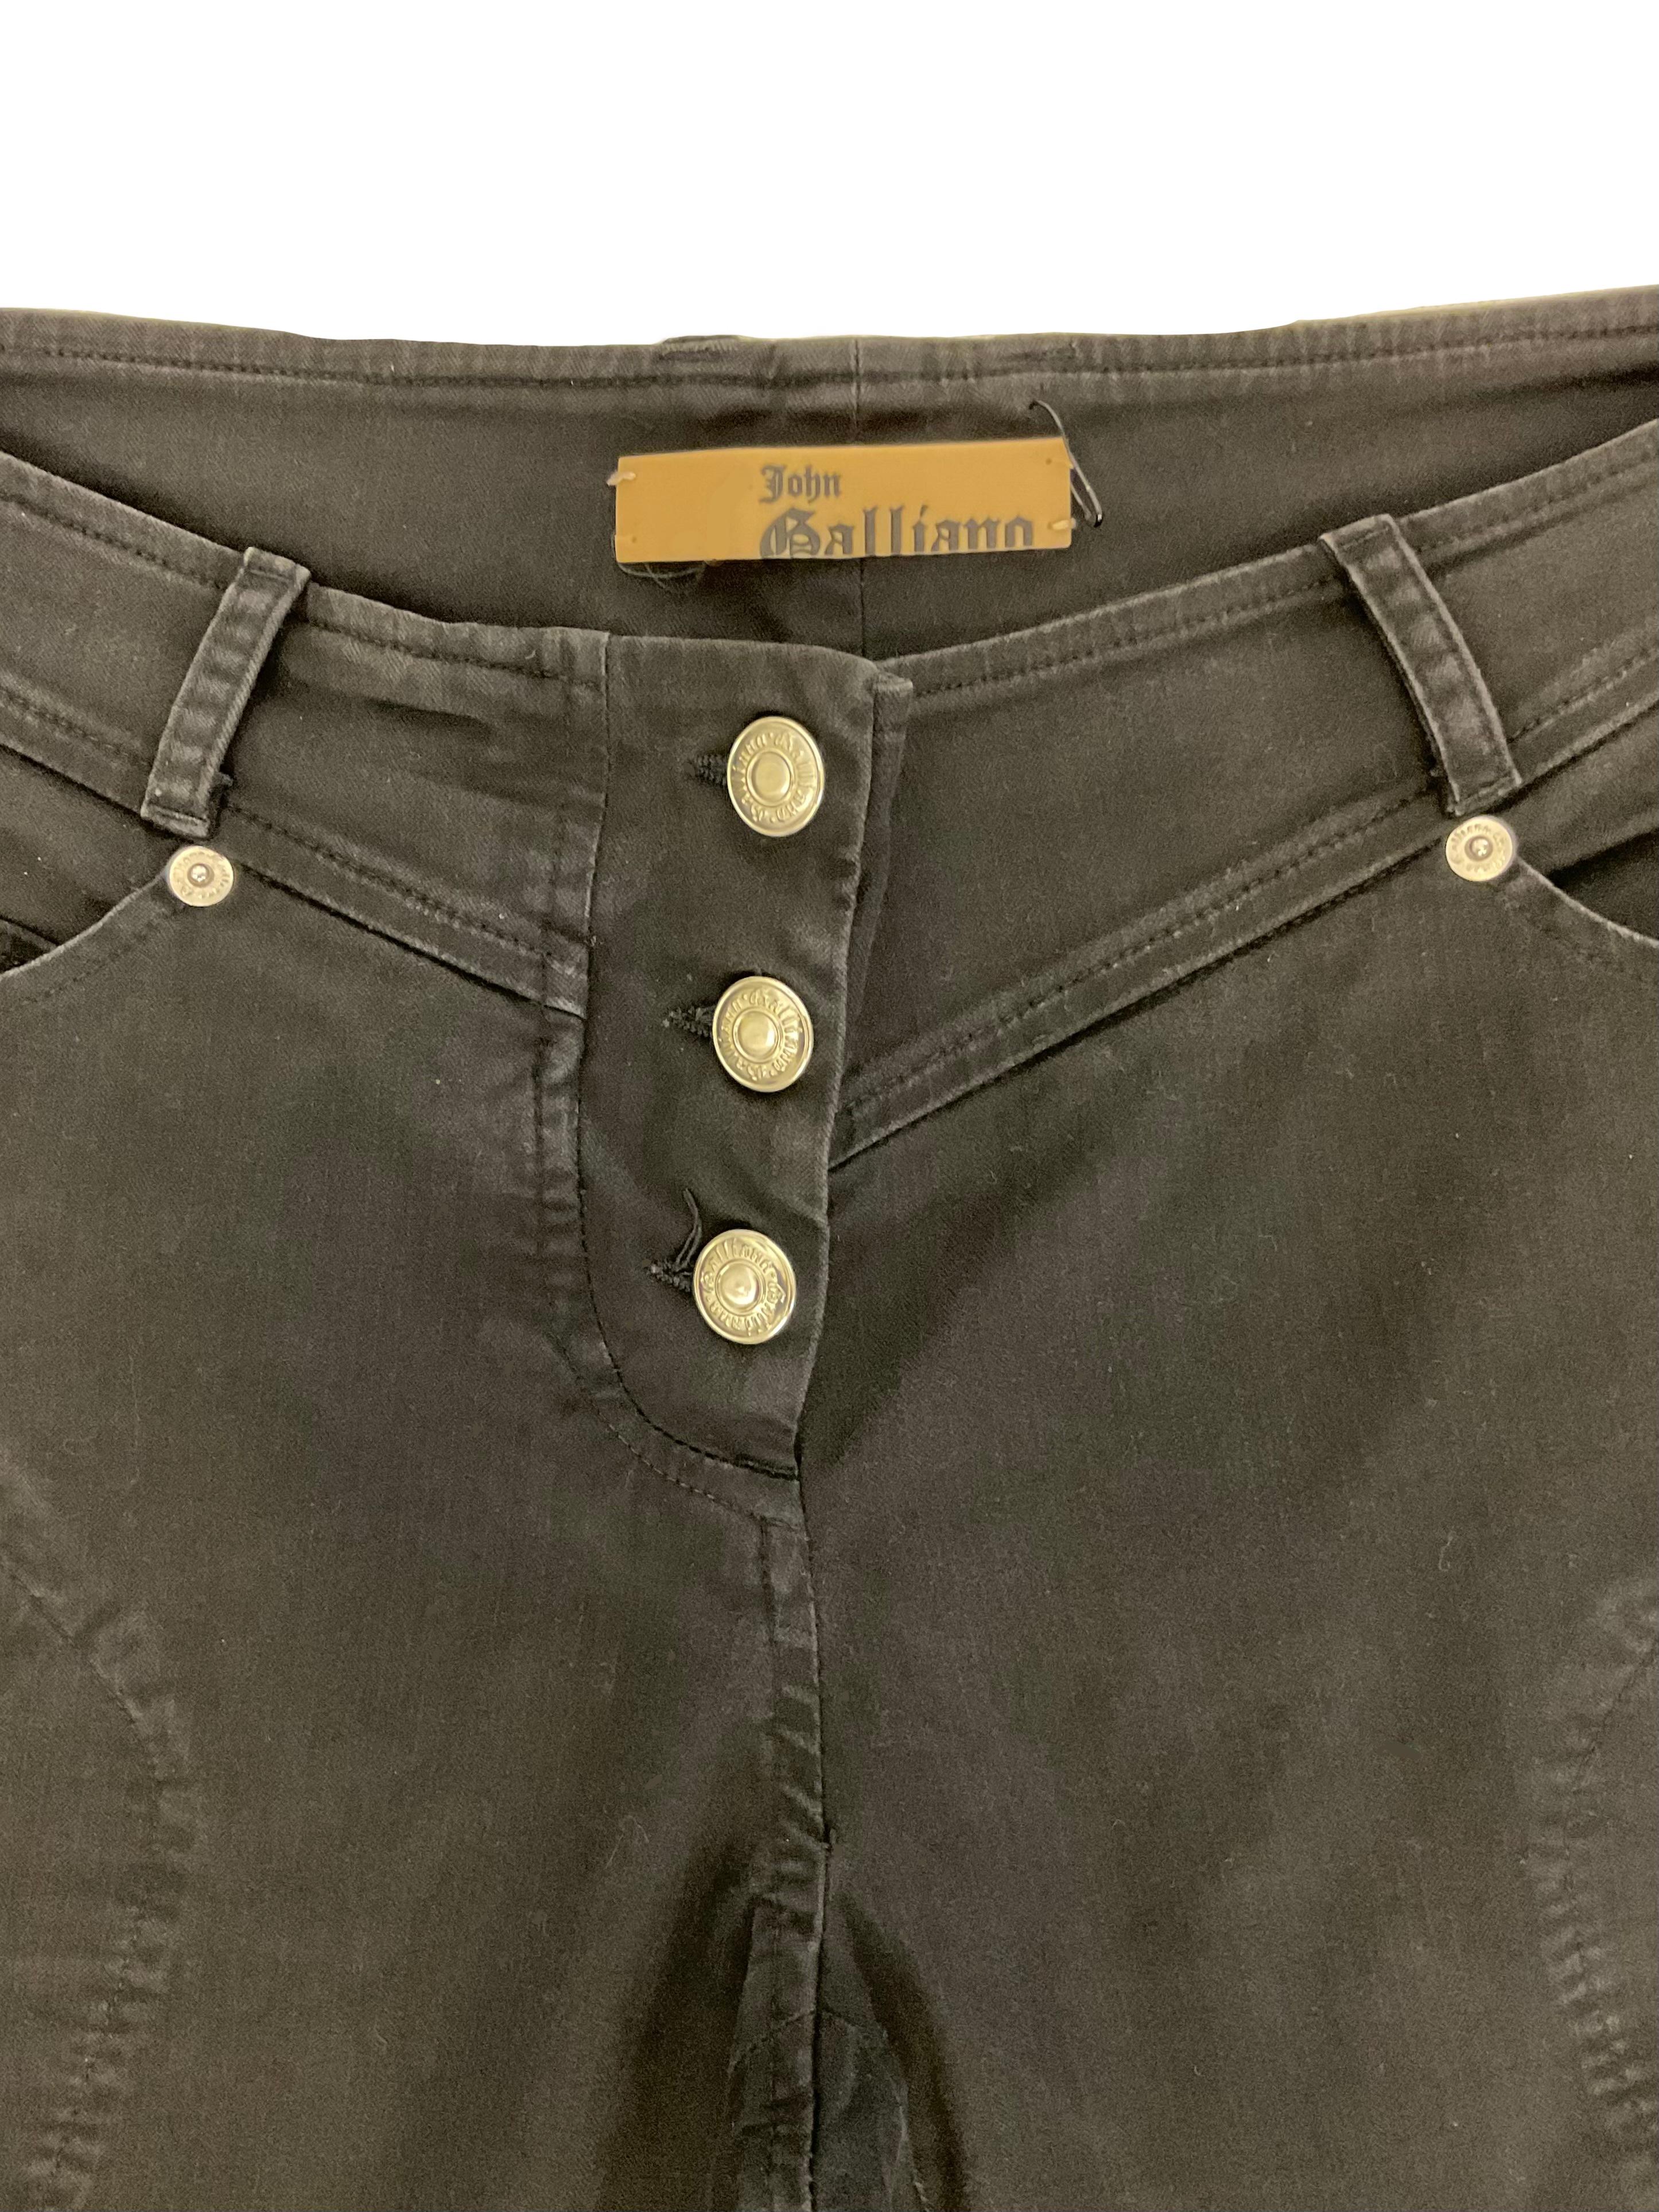 JOHN GALLIANO Pantalone slim nero in tessuto denim stretch In New Condition For Sale In Milano, IT